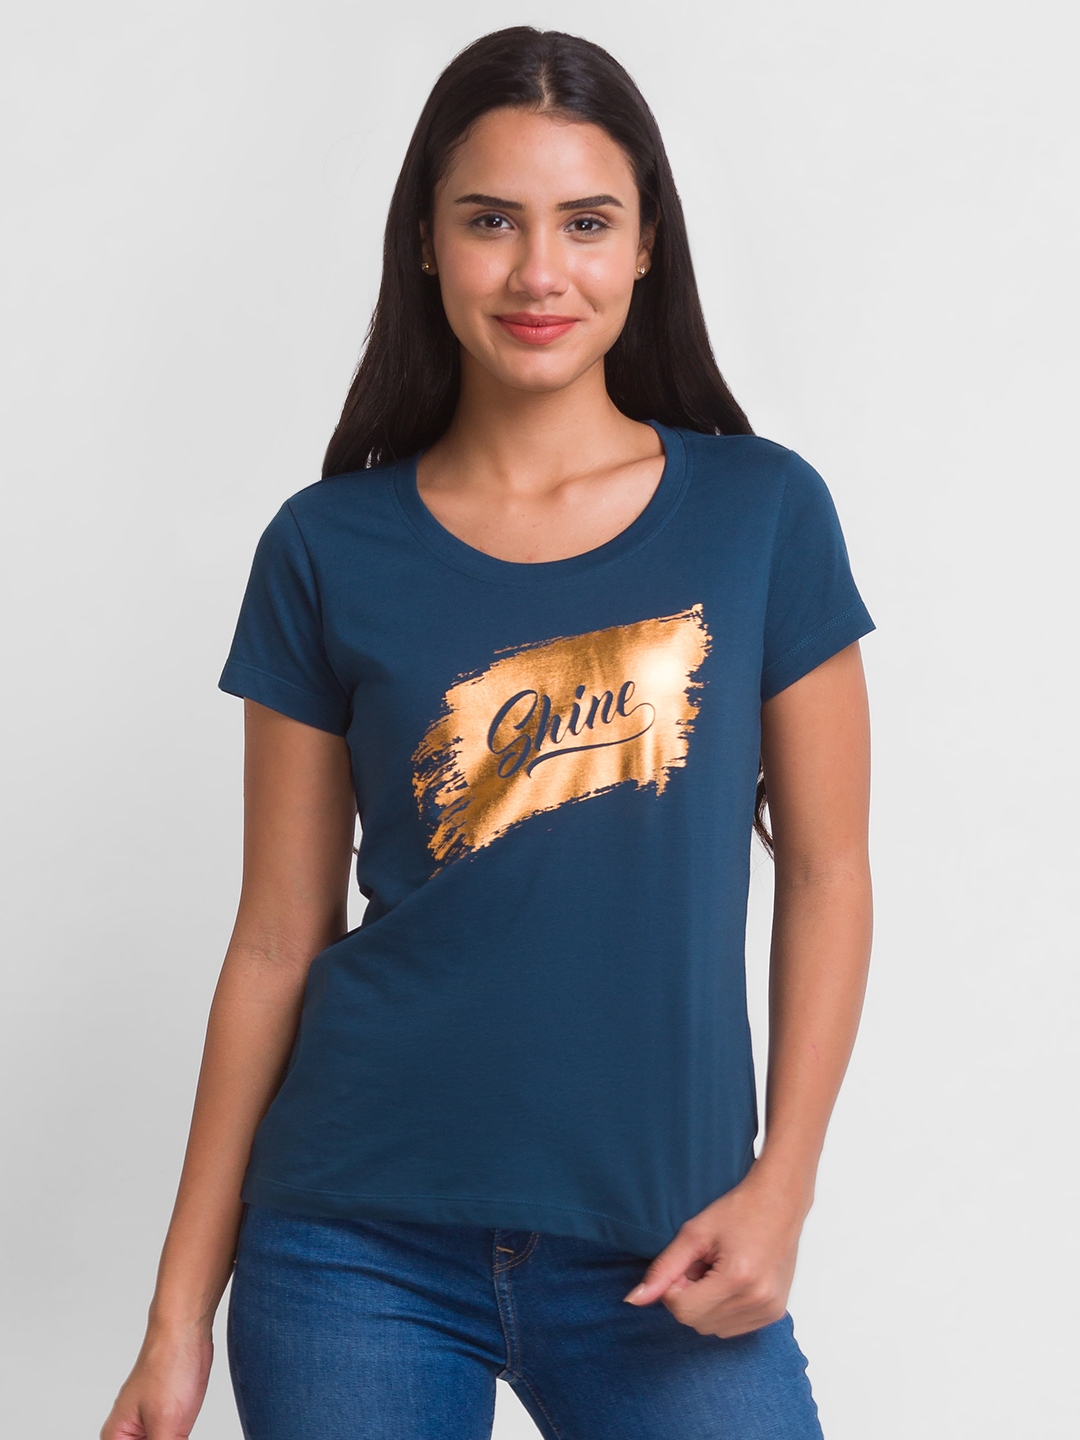 globus | Globus Teal Printed Tshirt 0